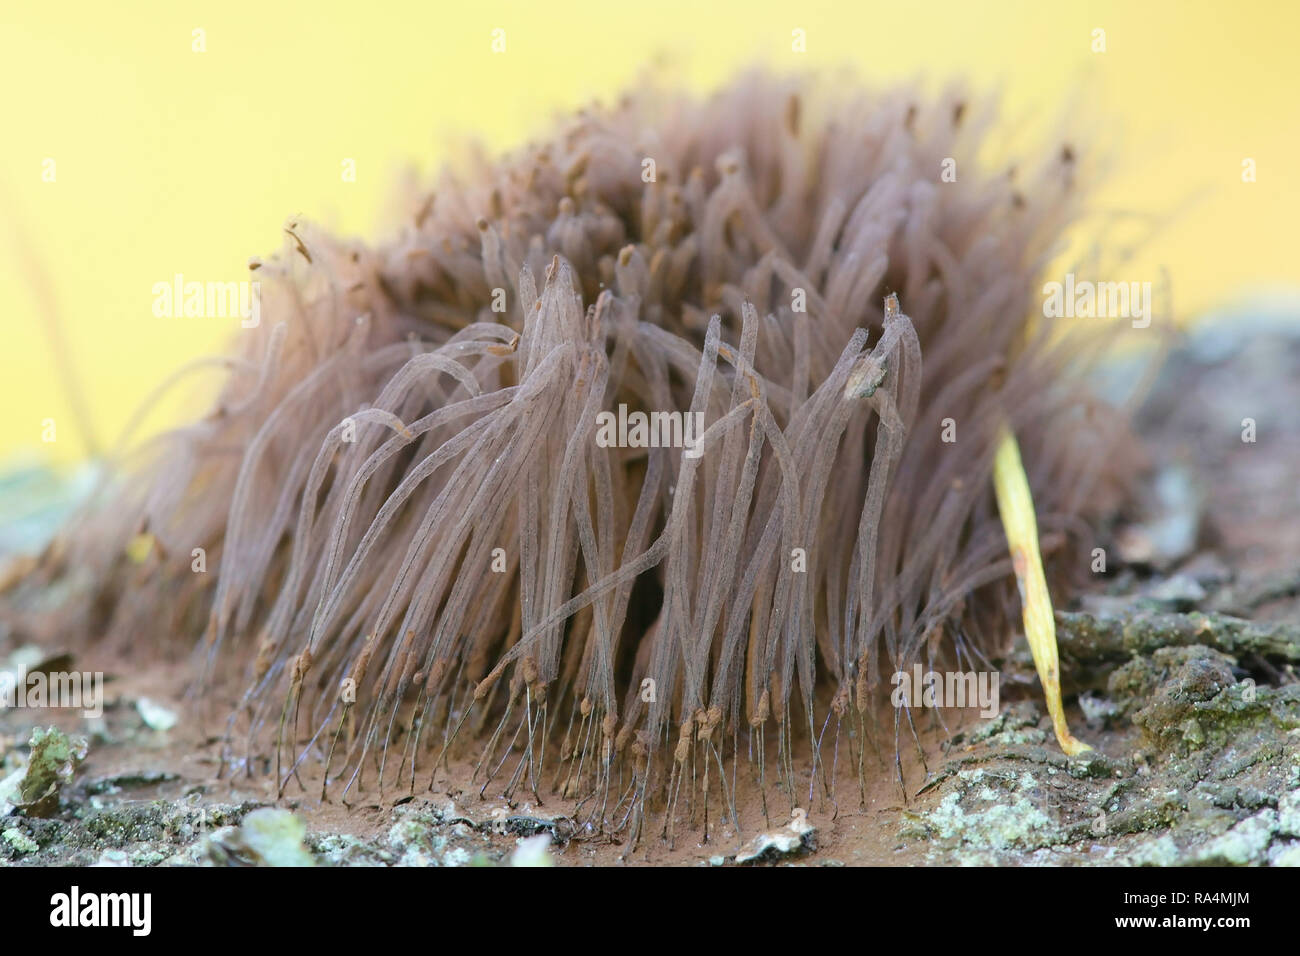 Tube slime mold, Stemonitis sp Stock Photo